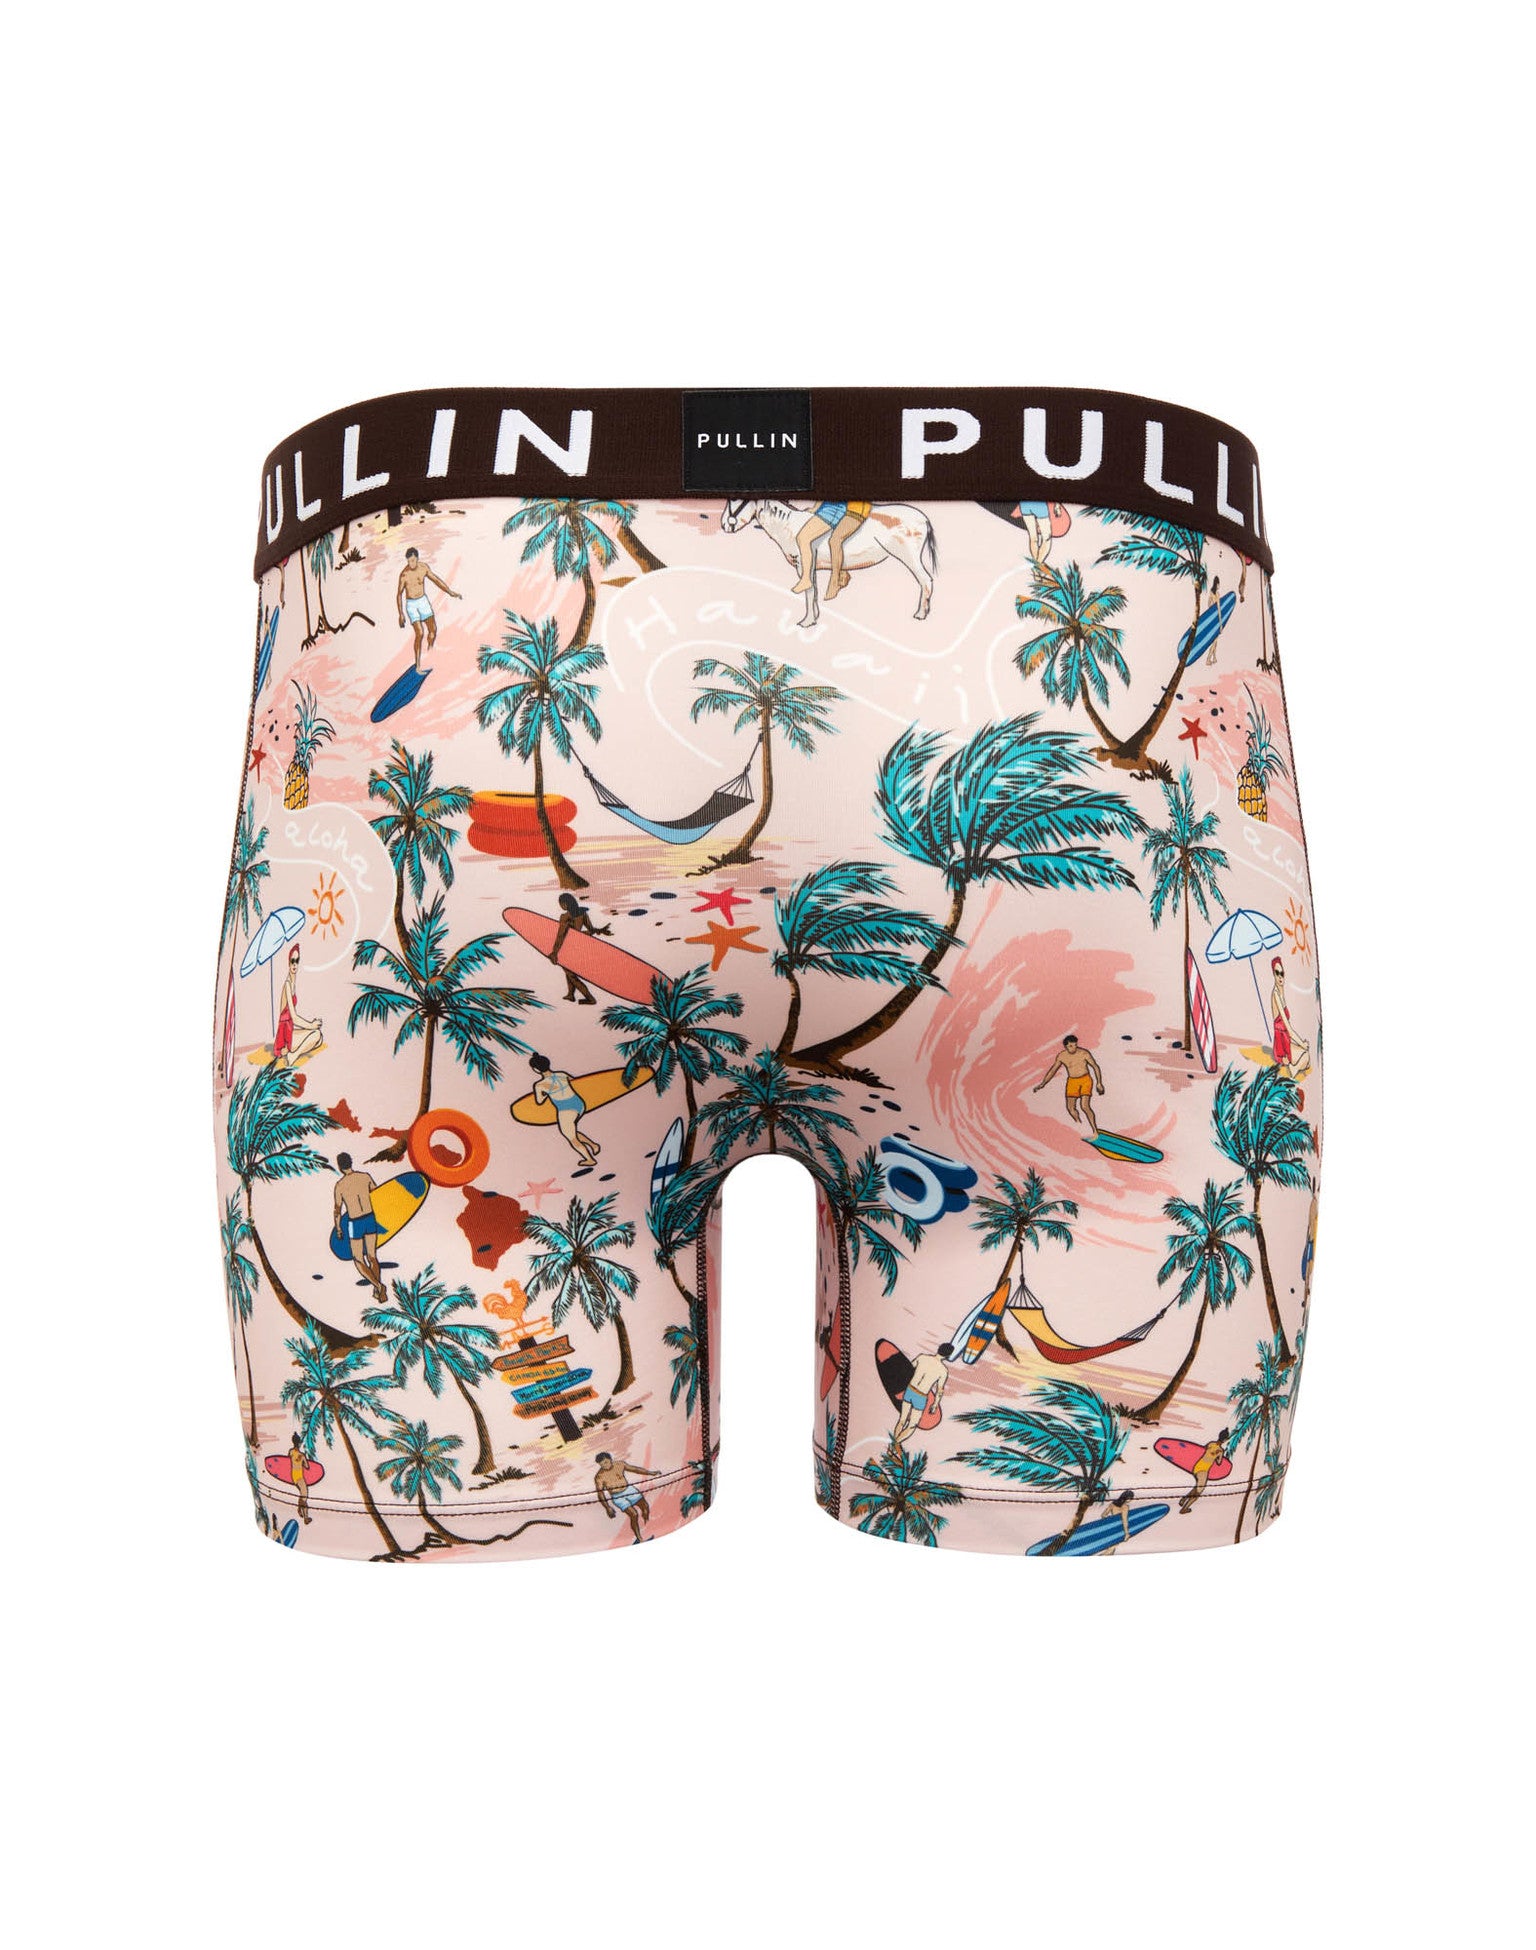 Pullin Men’s Fashion 2 Canoa Print Underwear